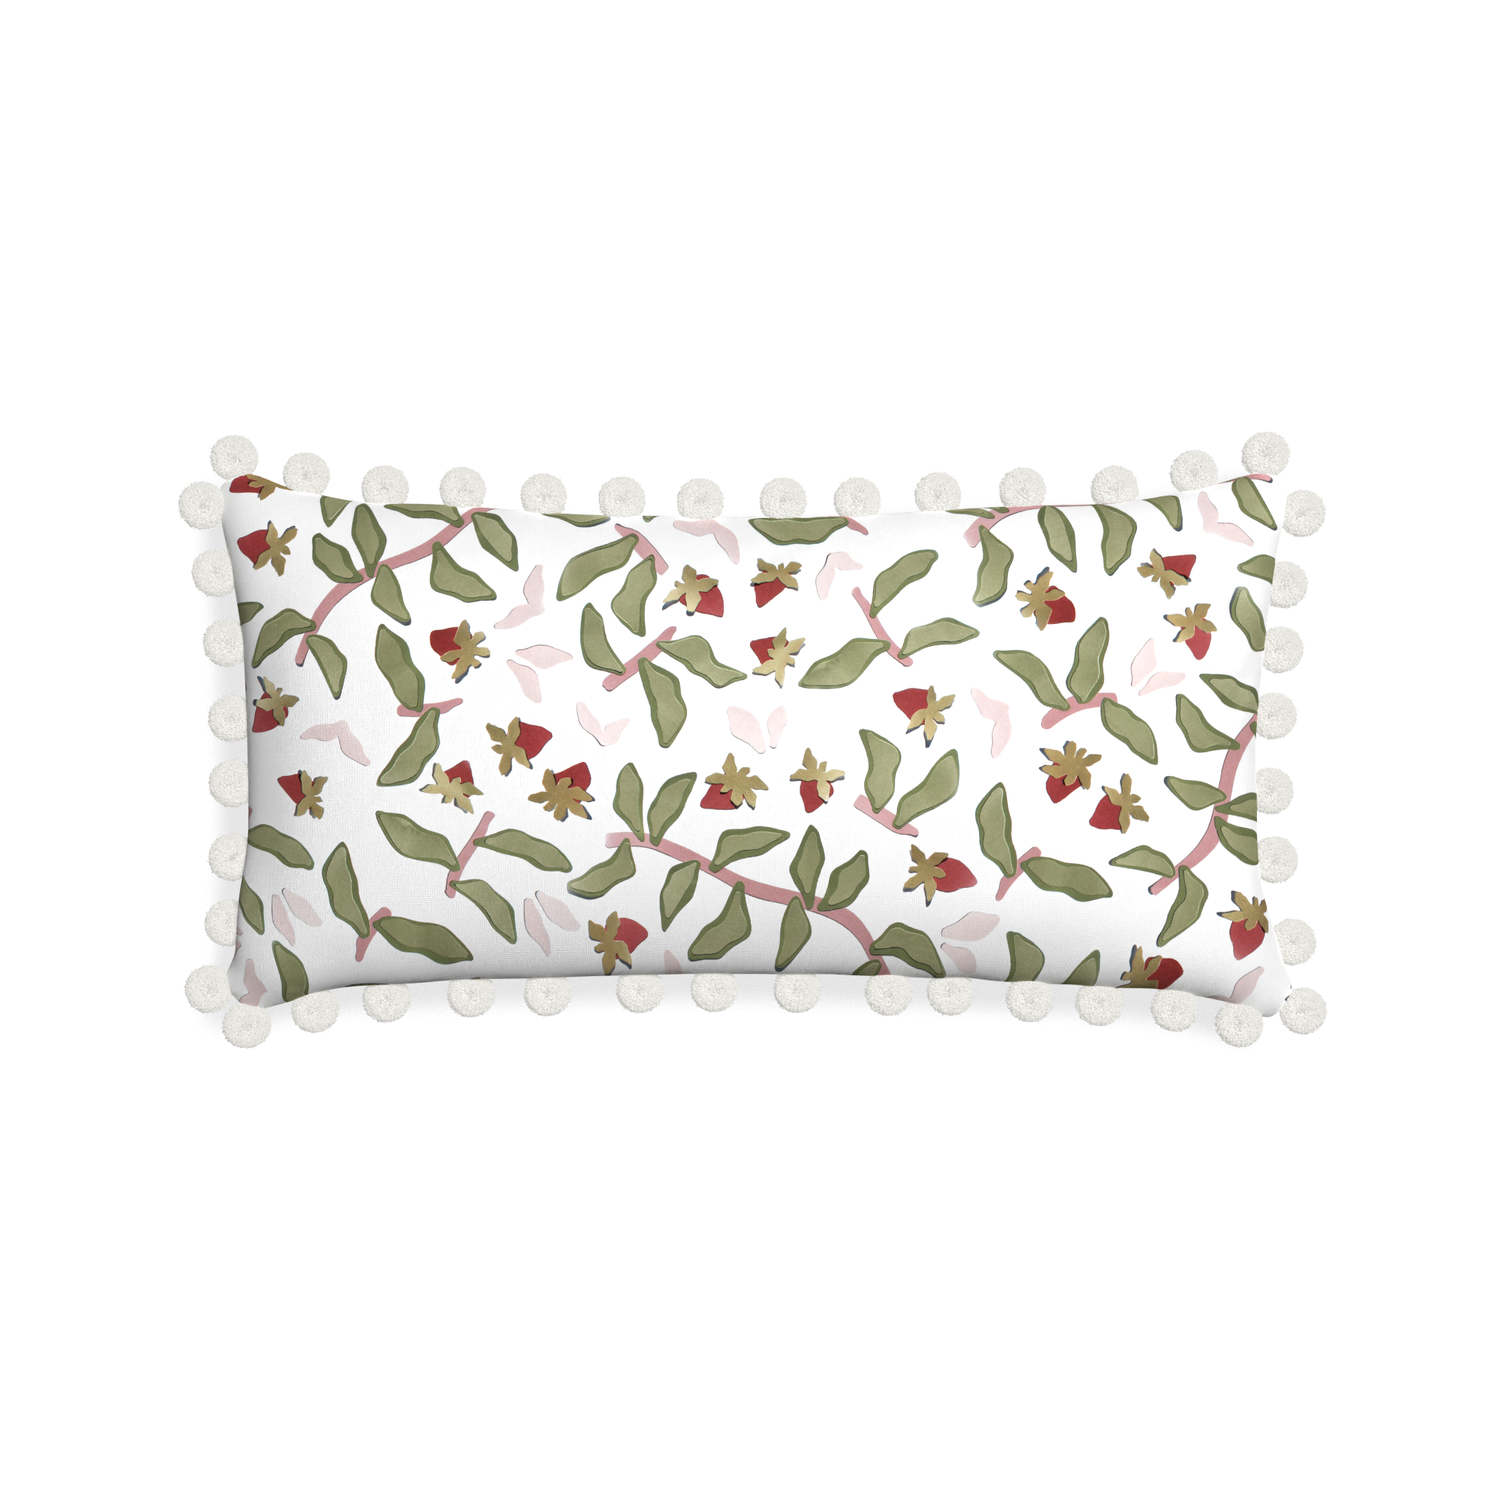 Midi-lumbar nellie custom strawberry & botanicalpillow with snow pom pom on white background